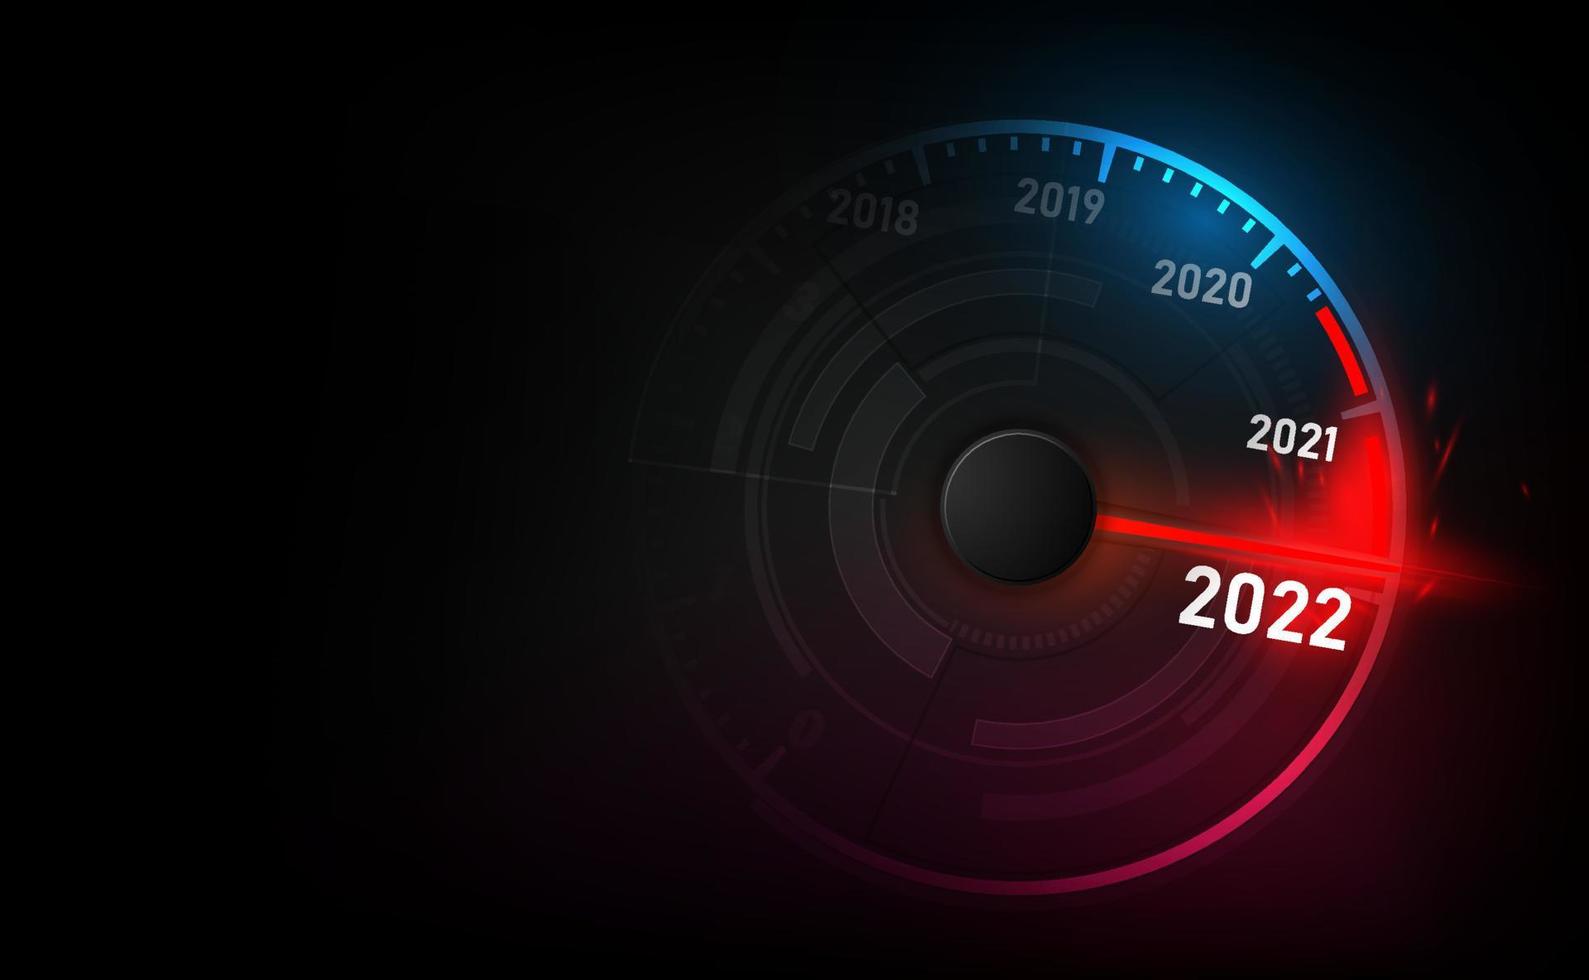 velocímetro do carro do ano novo 2022, indicador vermelho sobre fundo preto desfocado vetor